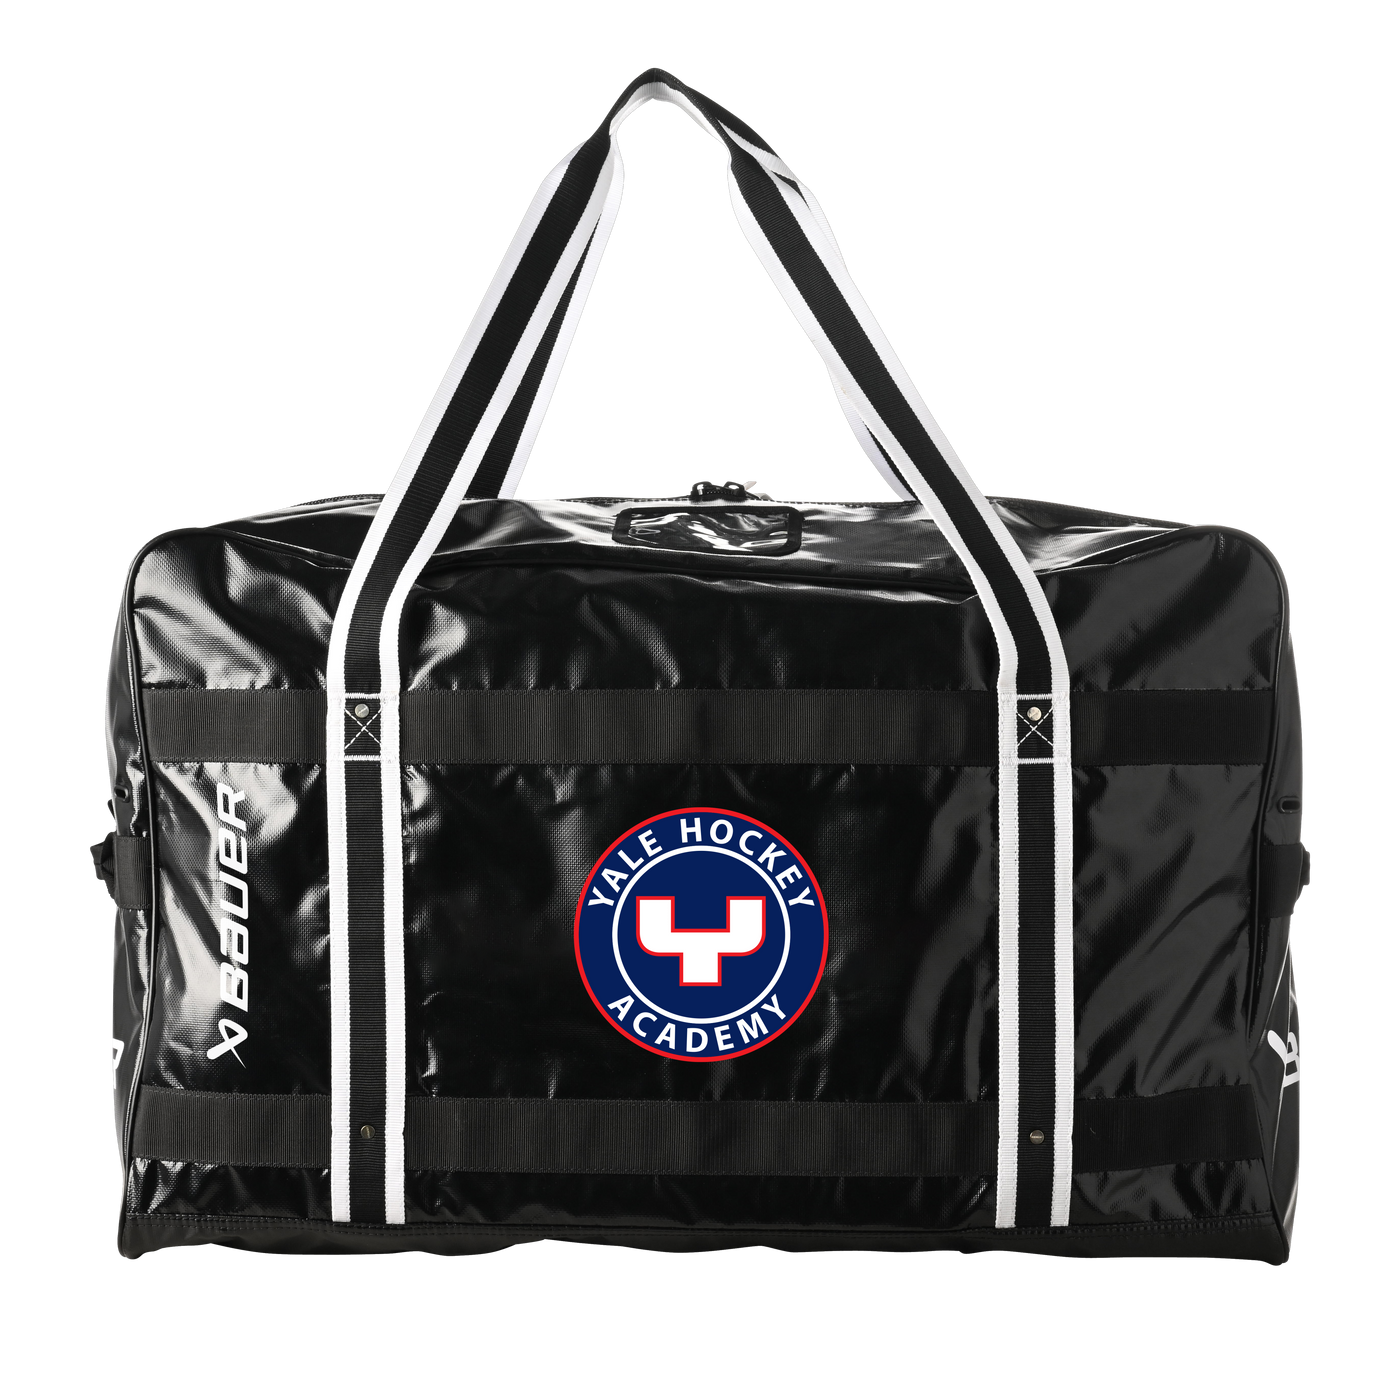 YHA -- Bauer Pro Duffle Bag